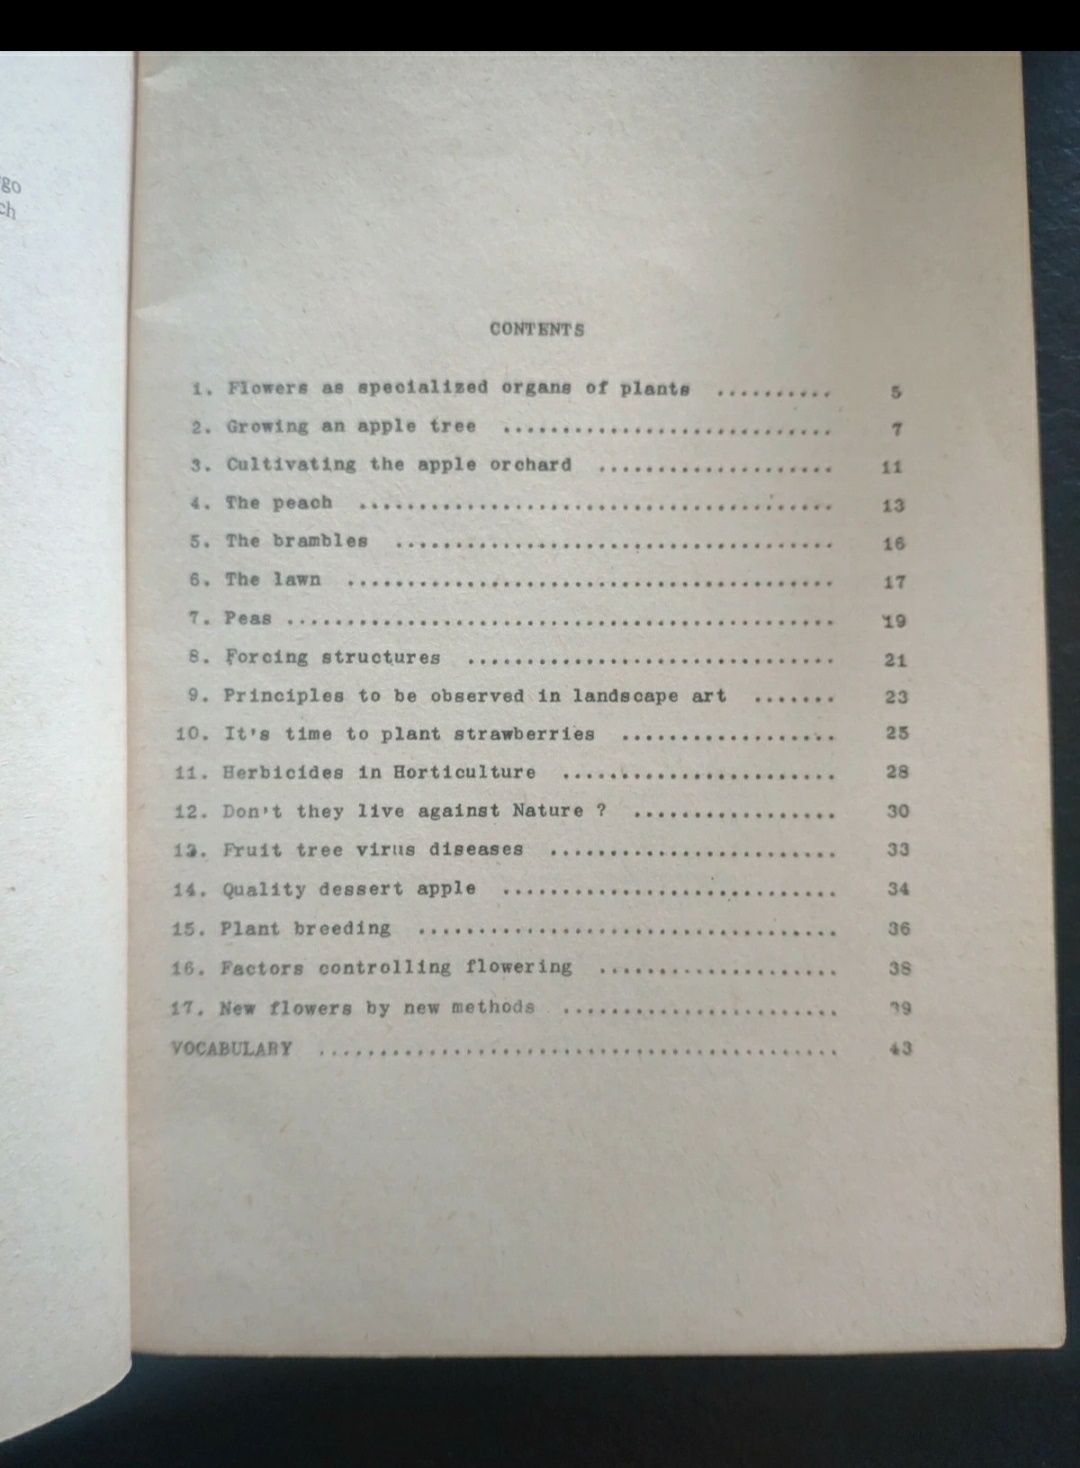 Teksty angielskie dla Wyższych Szkół Rolniczych , 1978